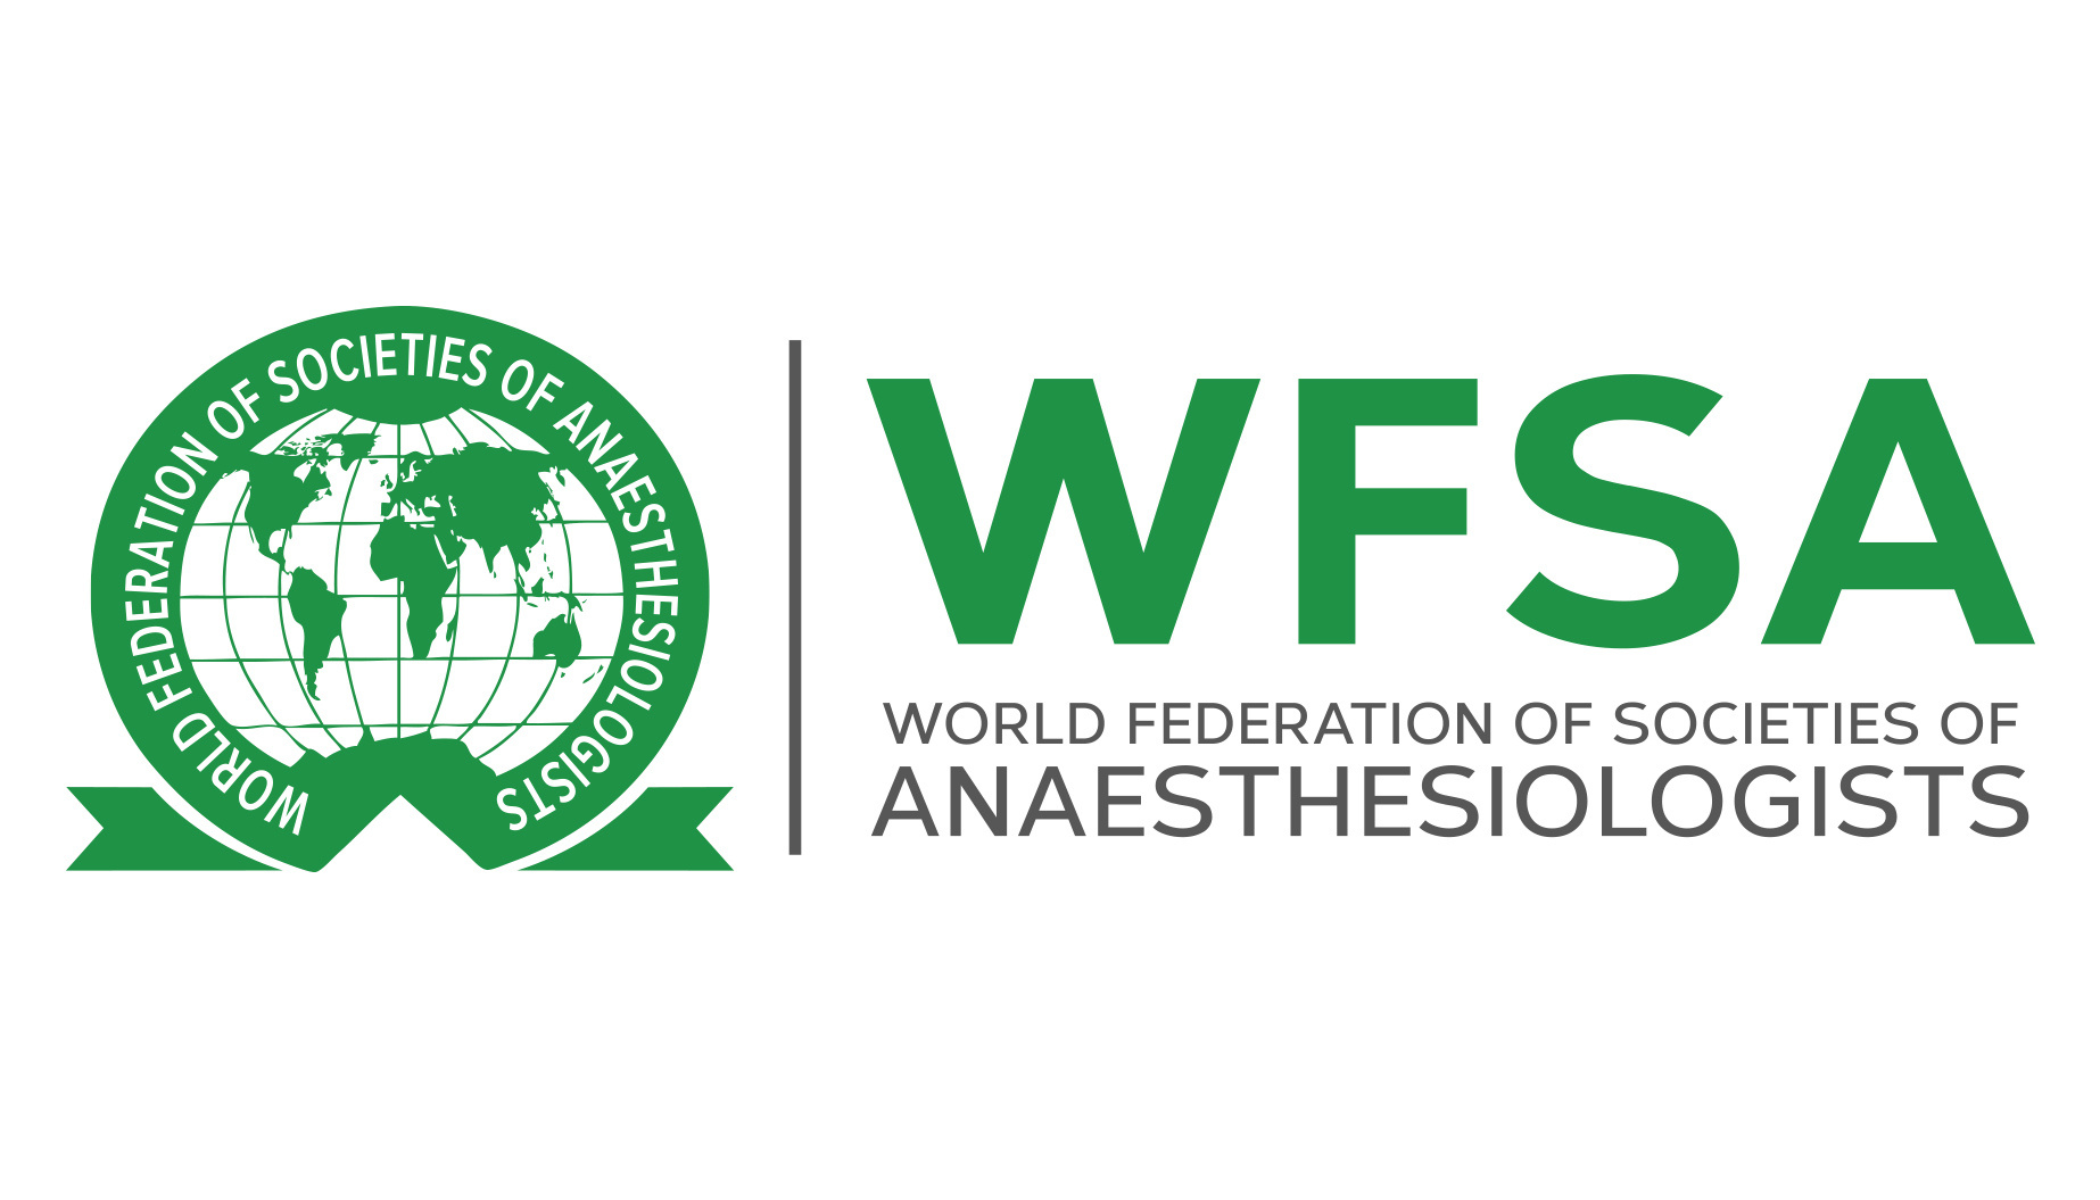 Información sobre el fin de la producción de halotano para las sociedades miembros de la WFSA